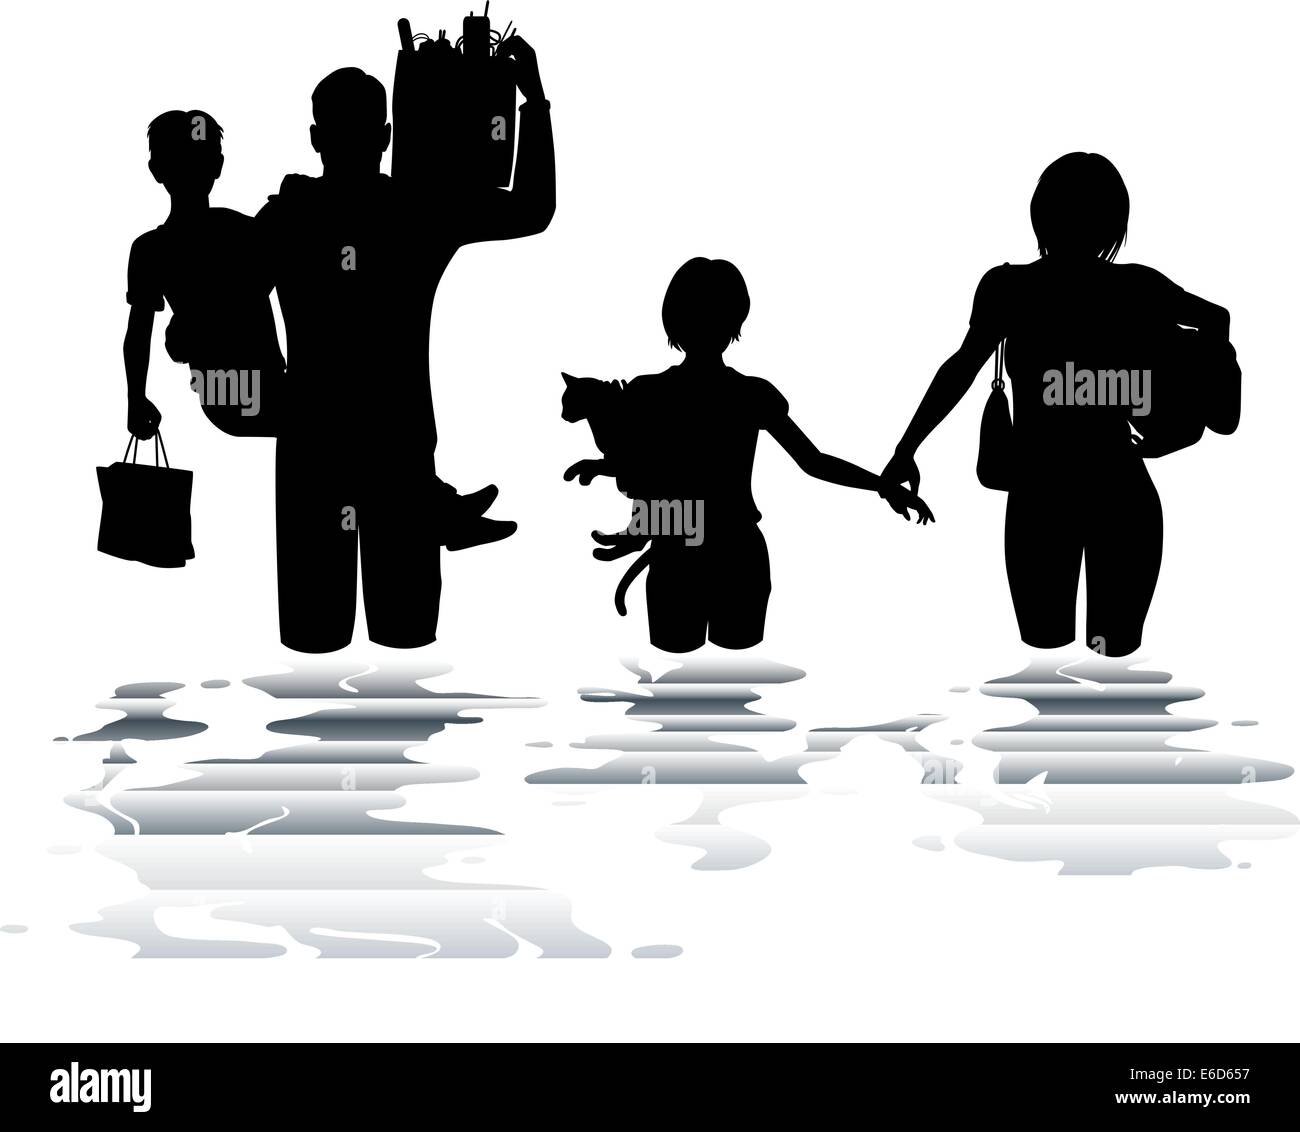 Bearbeitbares Vektor-Illustration einer Familie tragen Gegenstände durch eine Flut Stock Vektor